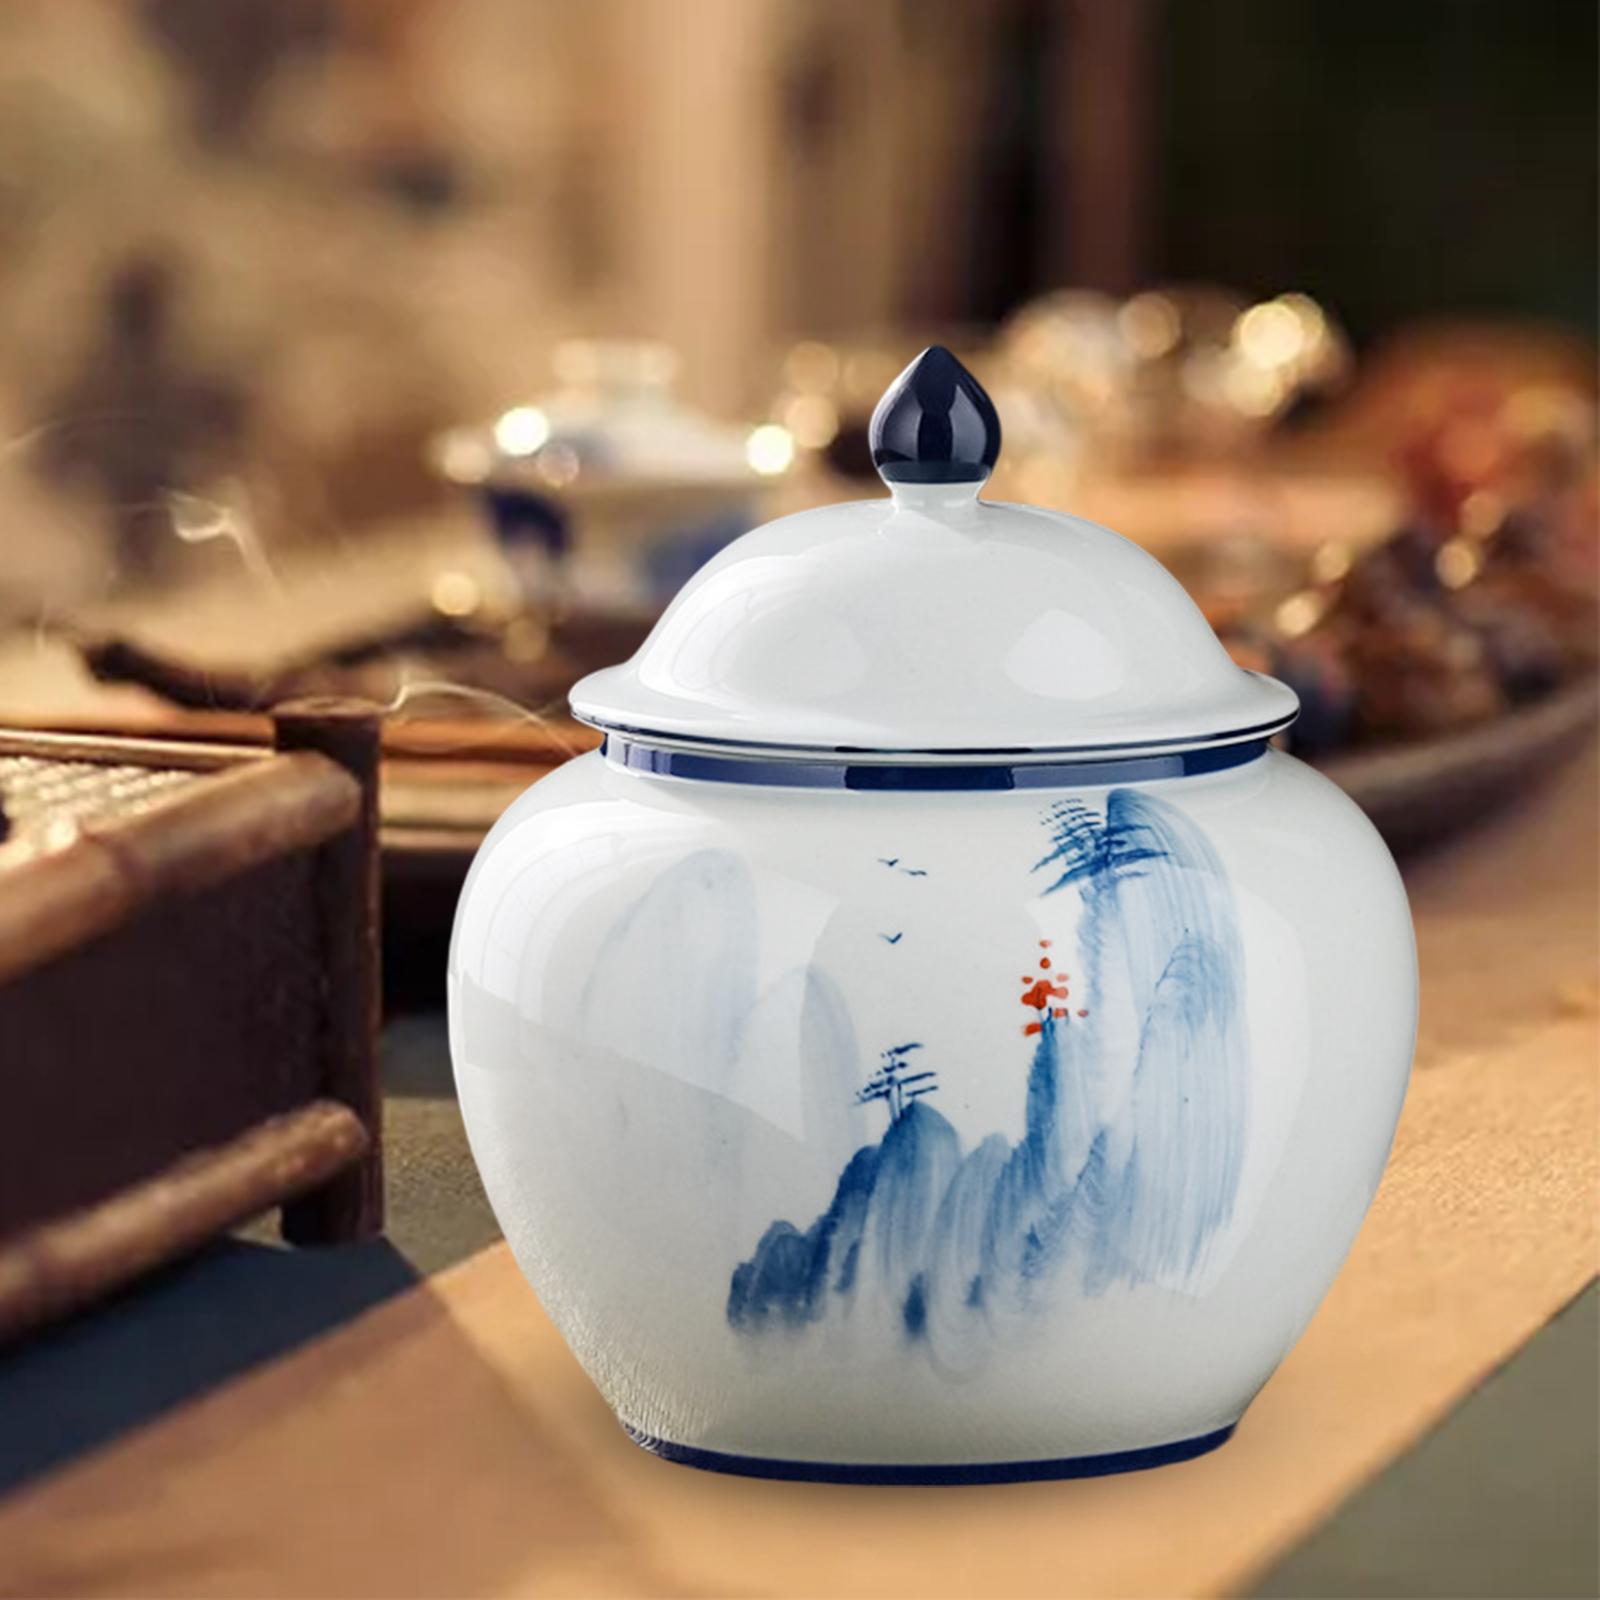 Porcelain Ginger Jar Temple Jar 13.3x16cm Storage Jar with Lid Glazed Enamel Hill